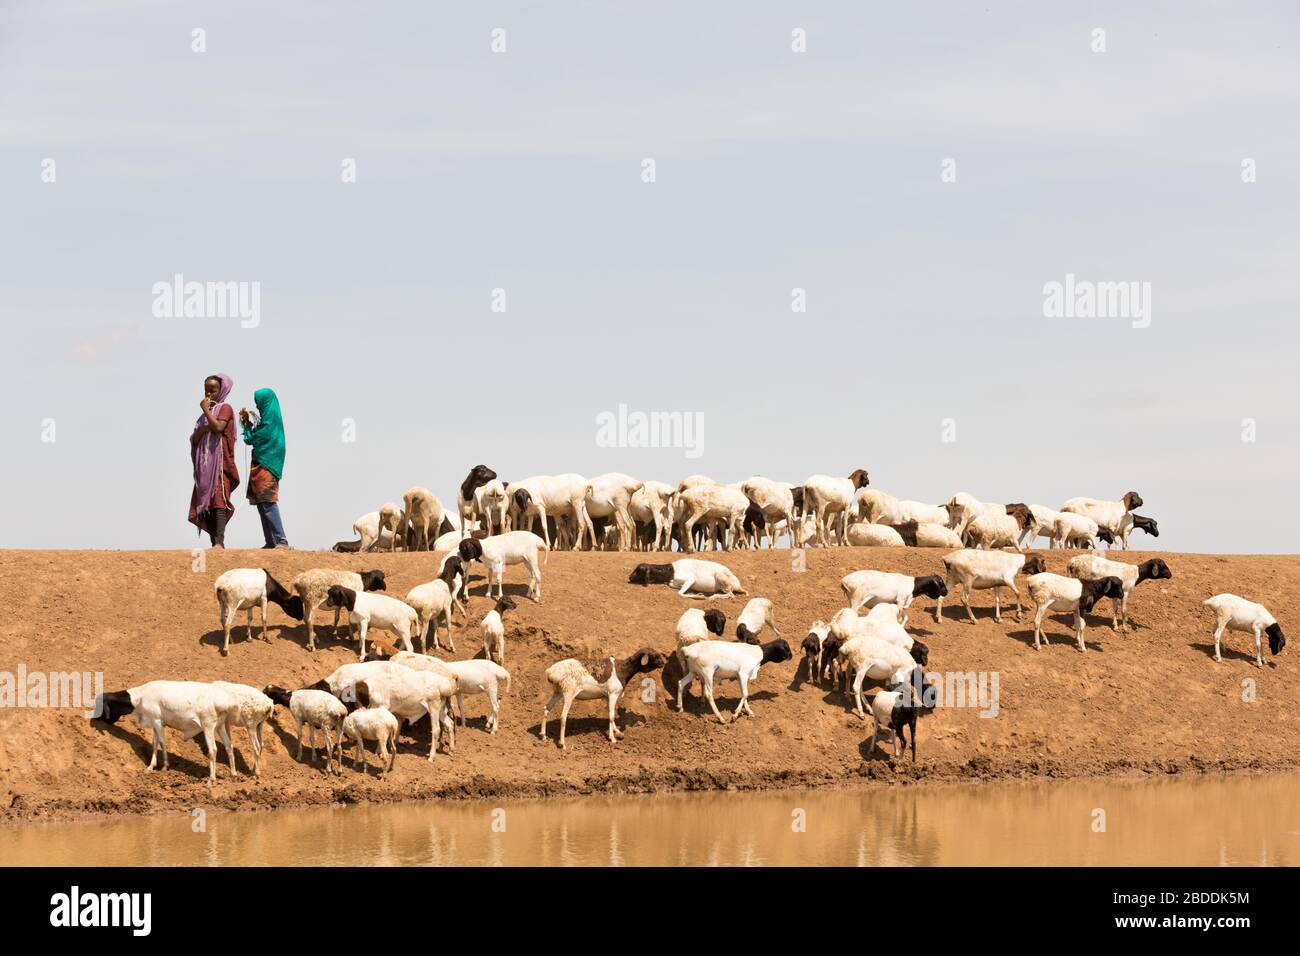 14.11.2019, Gode, région somalienne, Ethiopie - les filles gardent un troupeau africain de chèvres à un creux d'eau. Documentation du projet de l'organisation de secours Banque D'Images